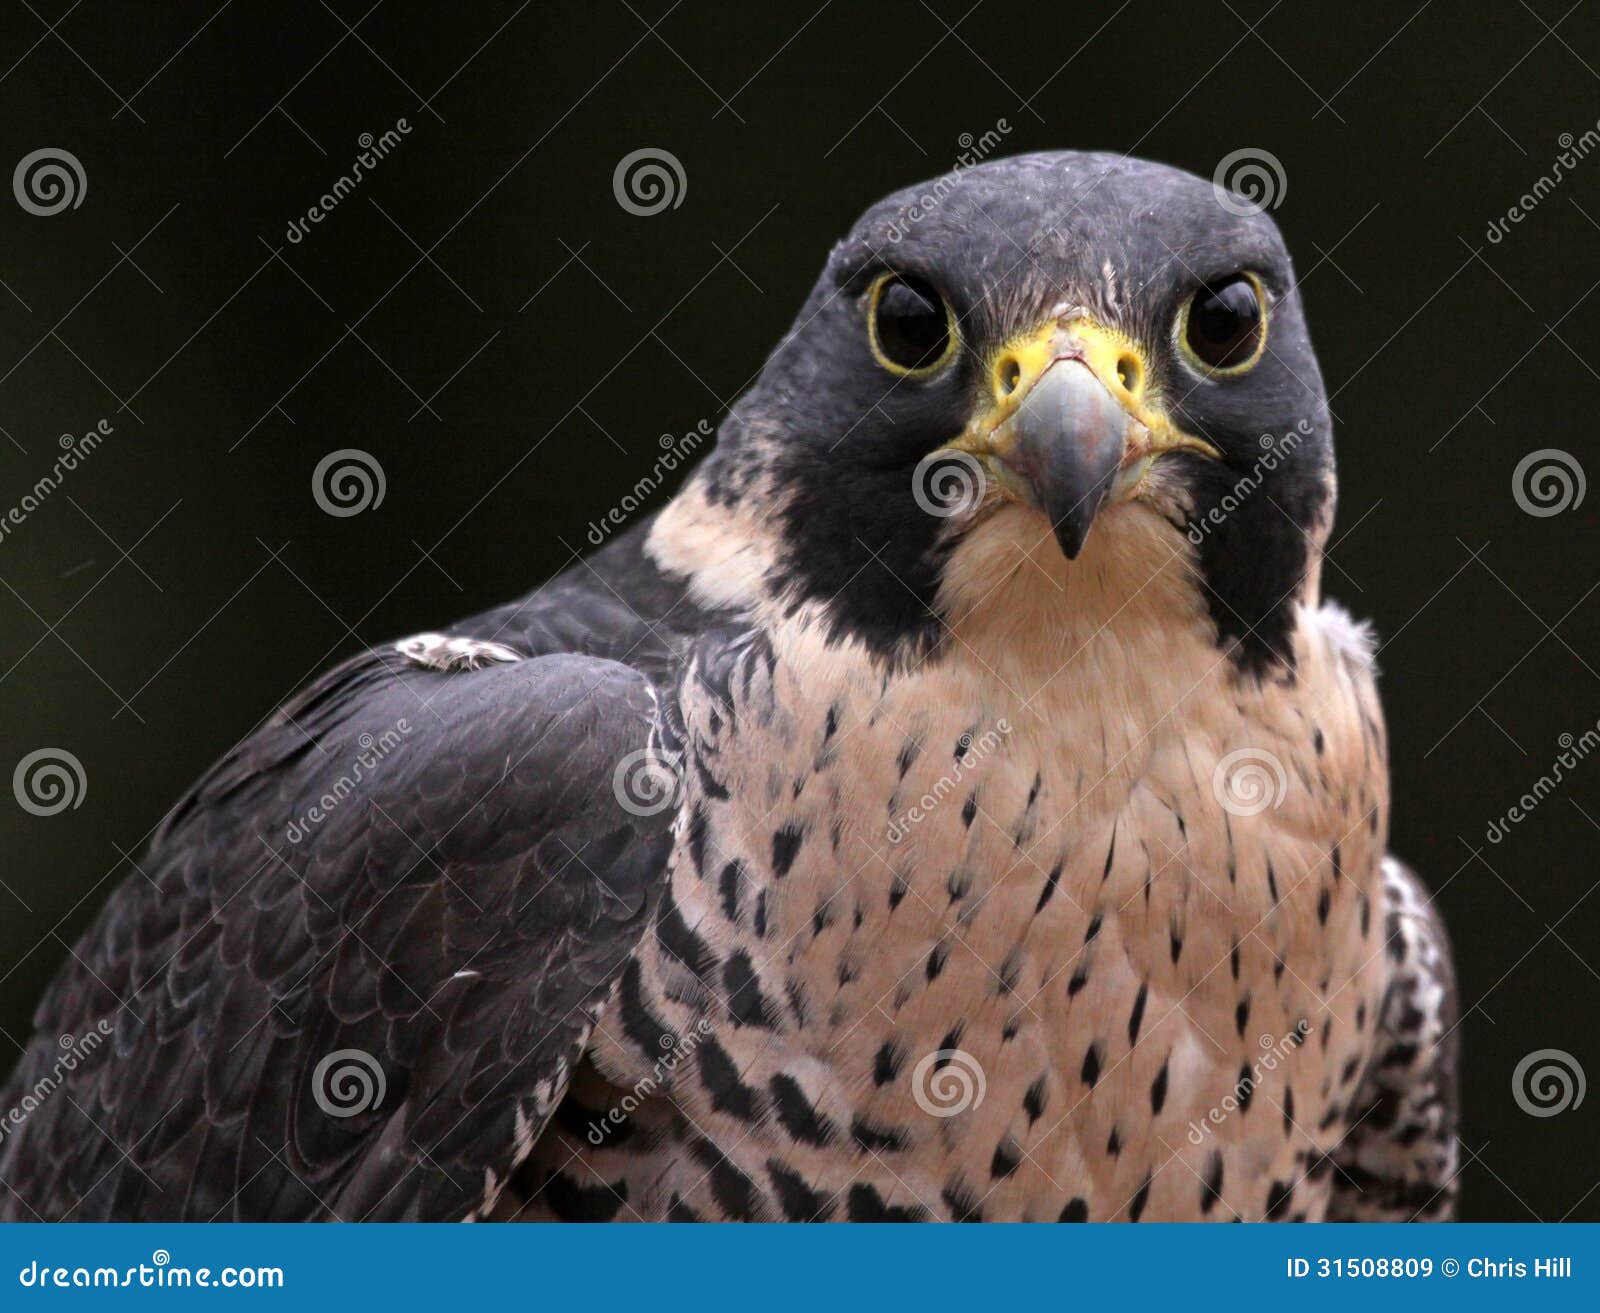 staring peregrine falcon